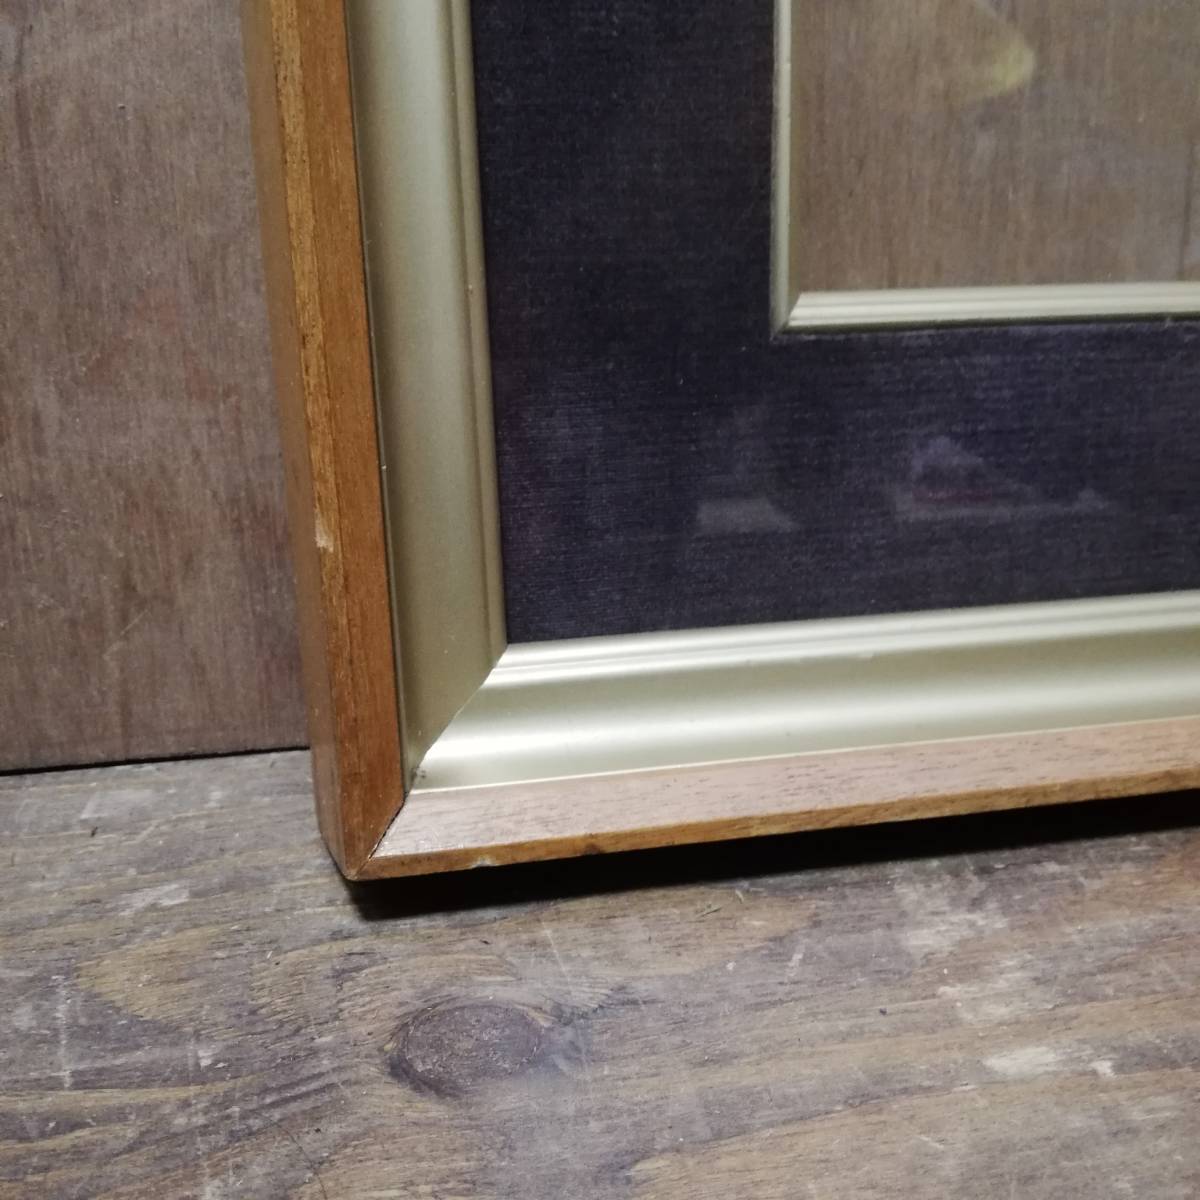  старый живопись масляными красками сумма F8 размер 65cm×57cm Vintage 